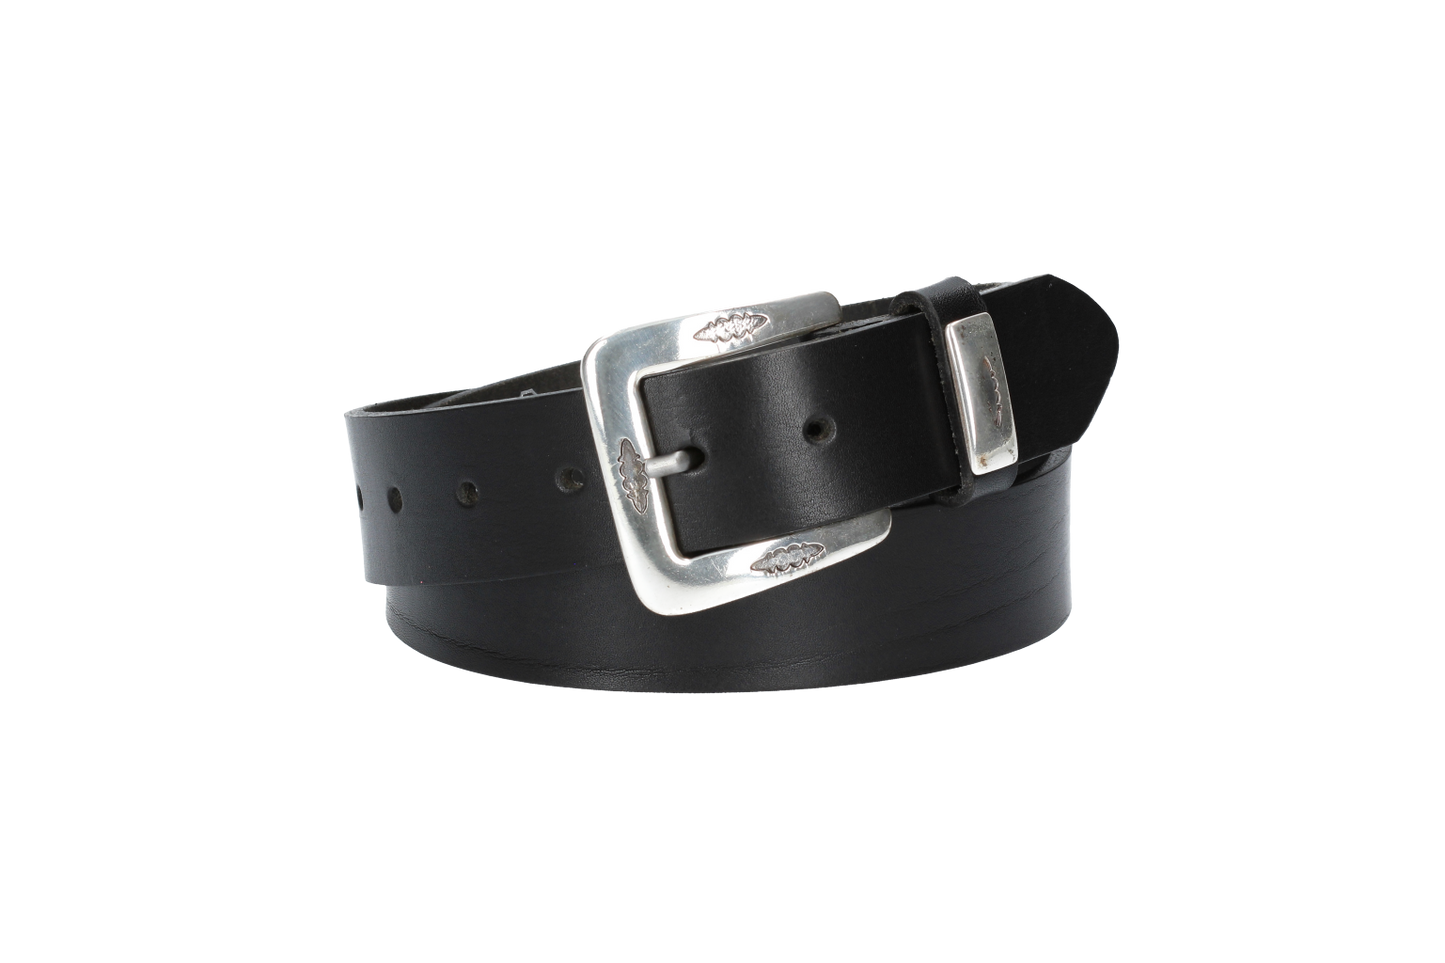 Hochwertiger Ledergürtel 35mm in Schwarz mit Western-Schließe in Silber